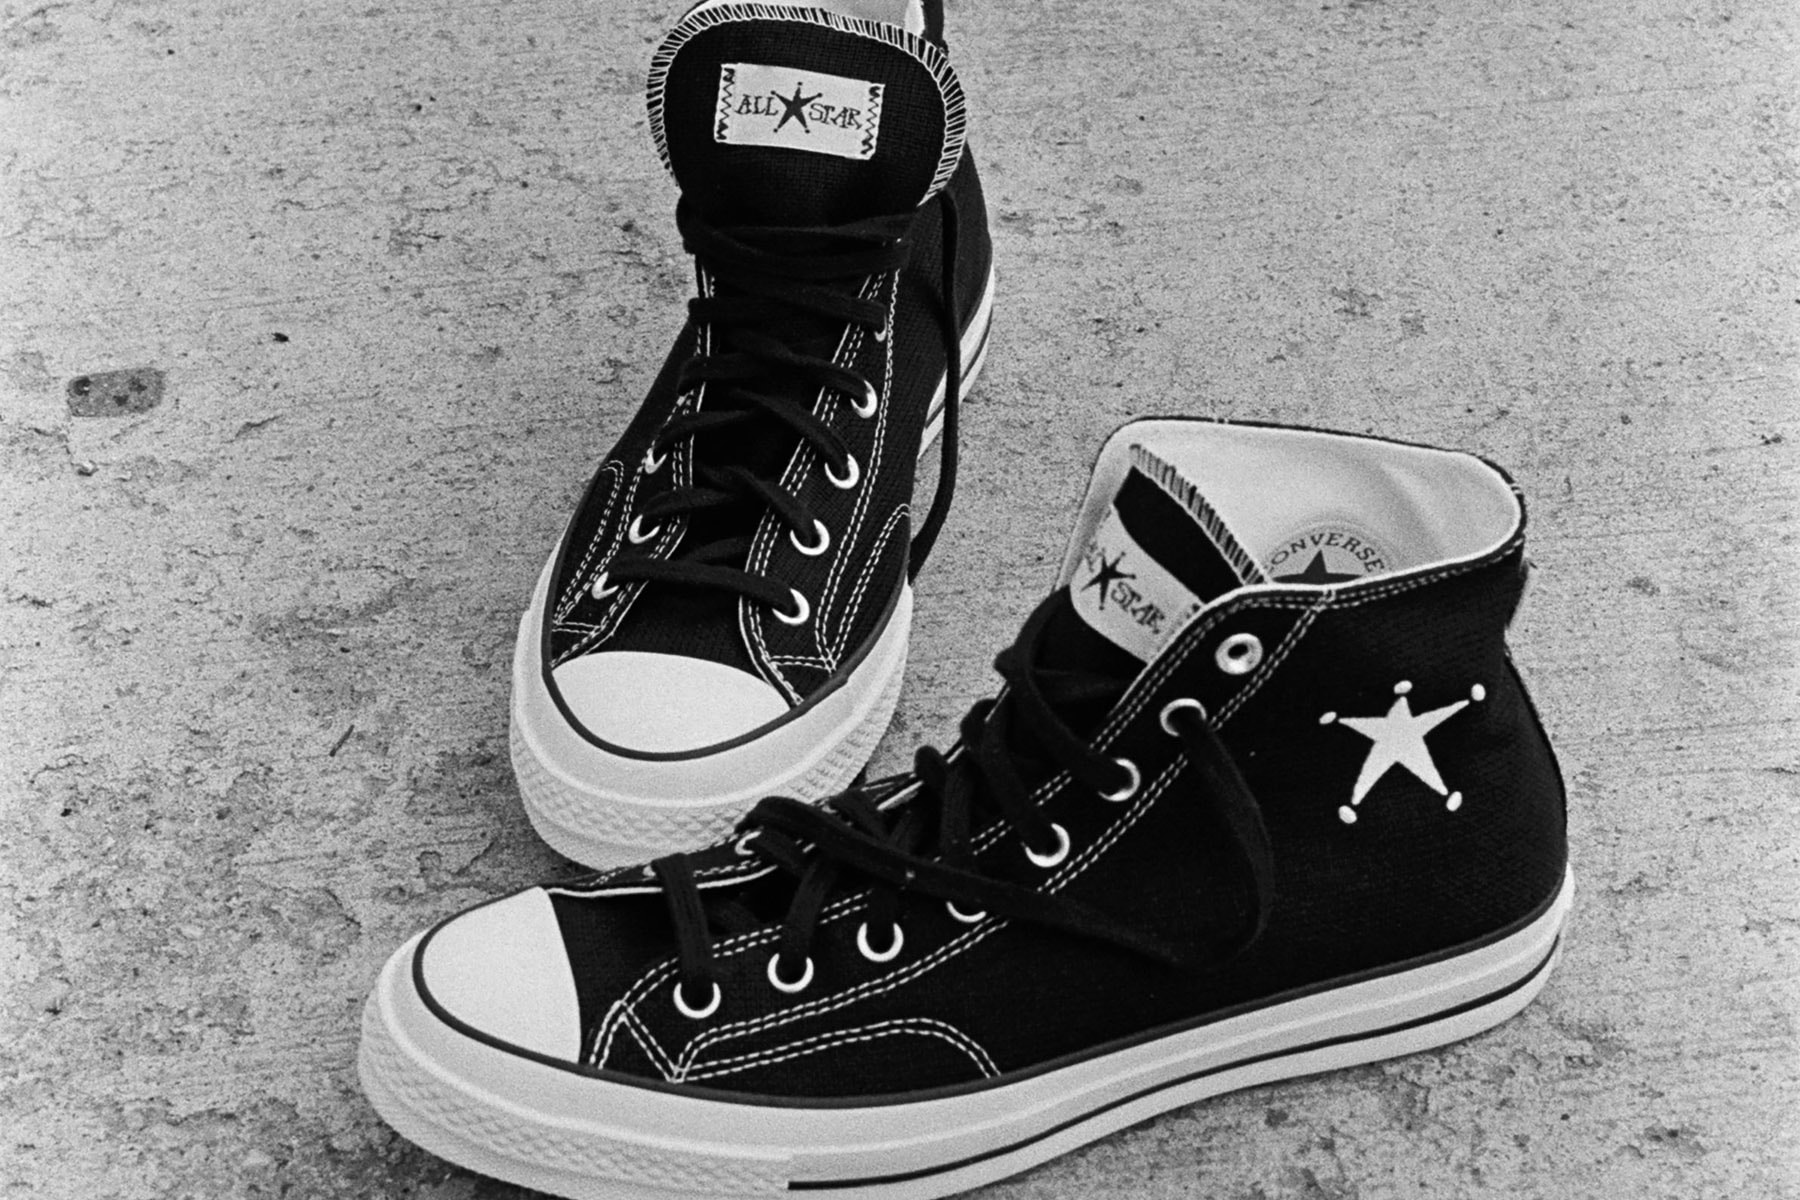 Stüssy x Converse Chuck 70 Hi 最新聯名鞋款台灣發售情報公開